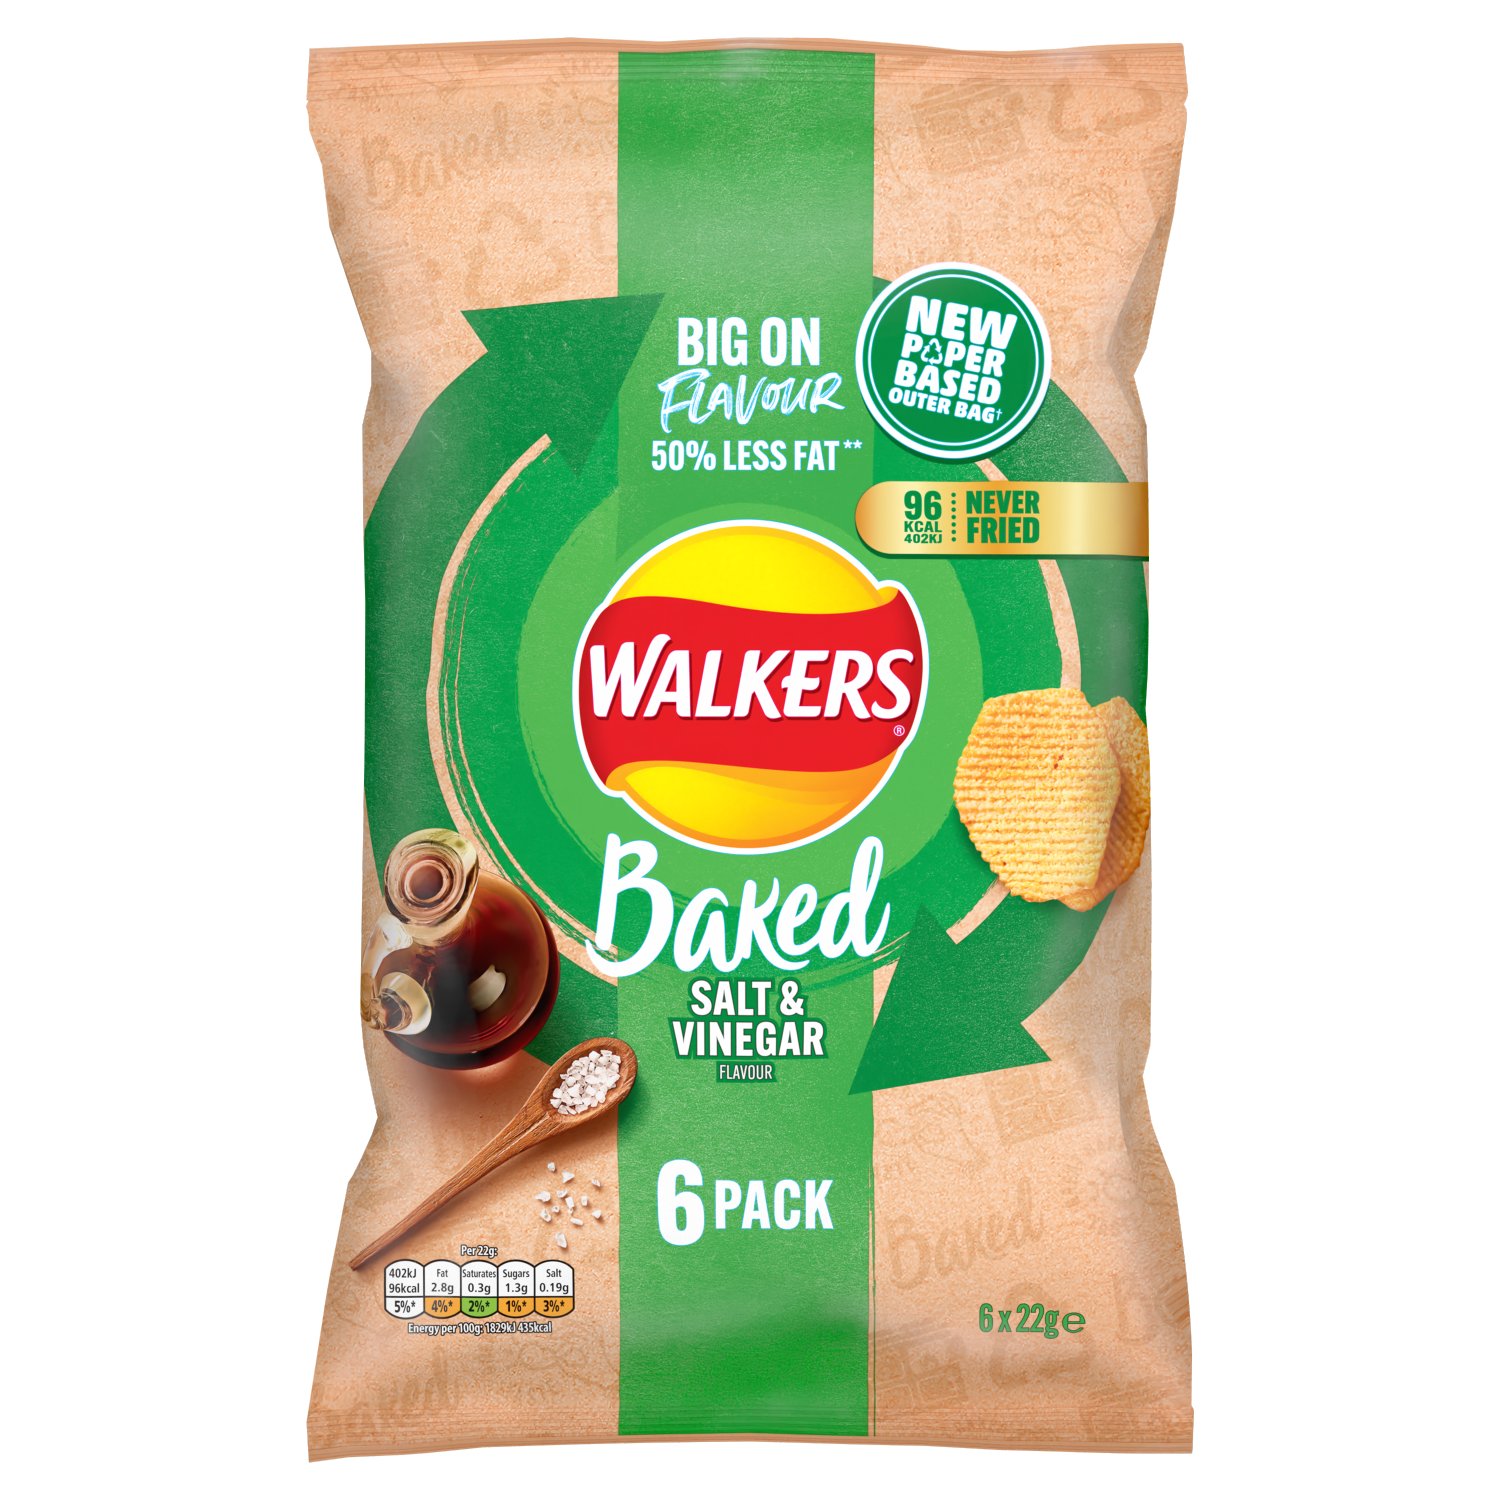 Walkers Baked Salt & Vinegar Crisps 6 Pack (22 g)